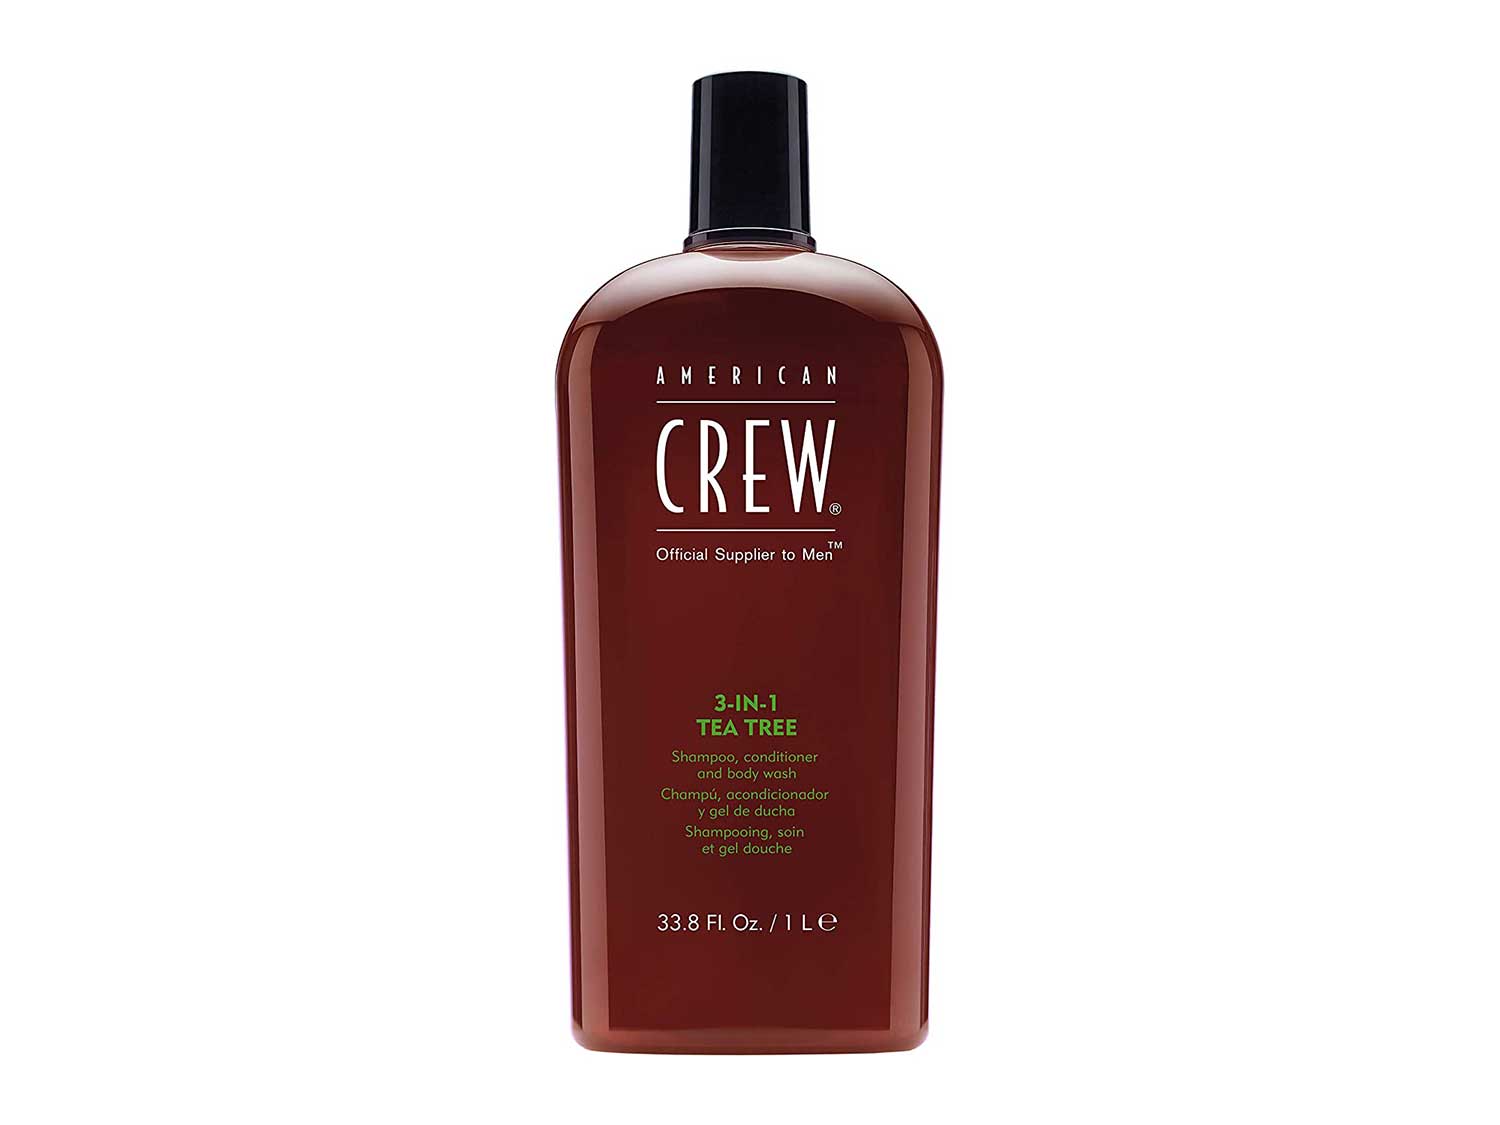 AMERICAN CREW 3-in-1 Tea Tree Shampoo Conditioner and Body Wash, 33.8 Fl Oz